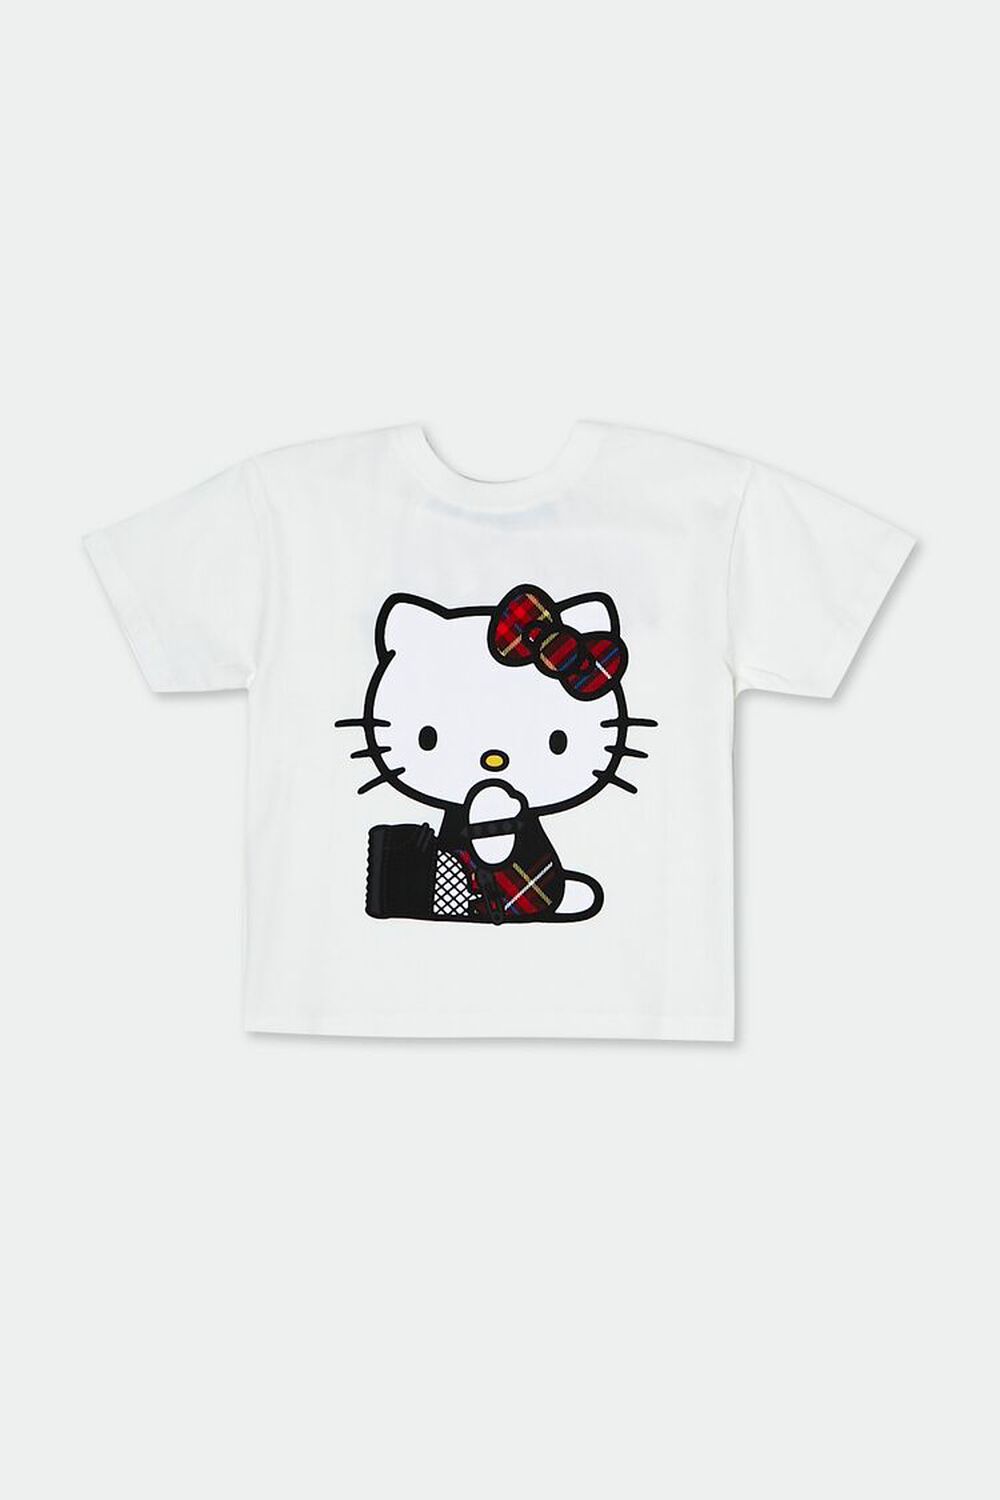 CREAM/MULTI Girls Hello Kitty & Friends Graphic Tee (Kids), image 1